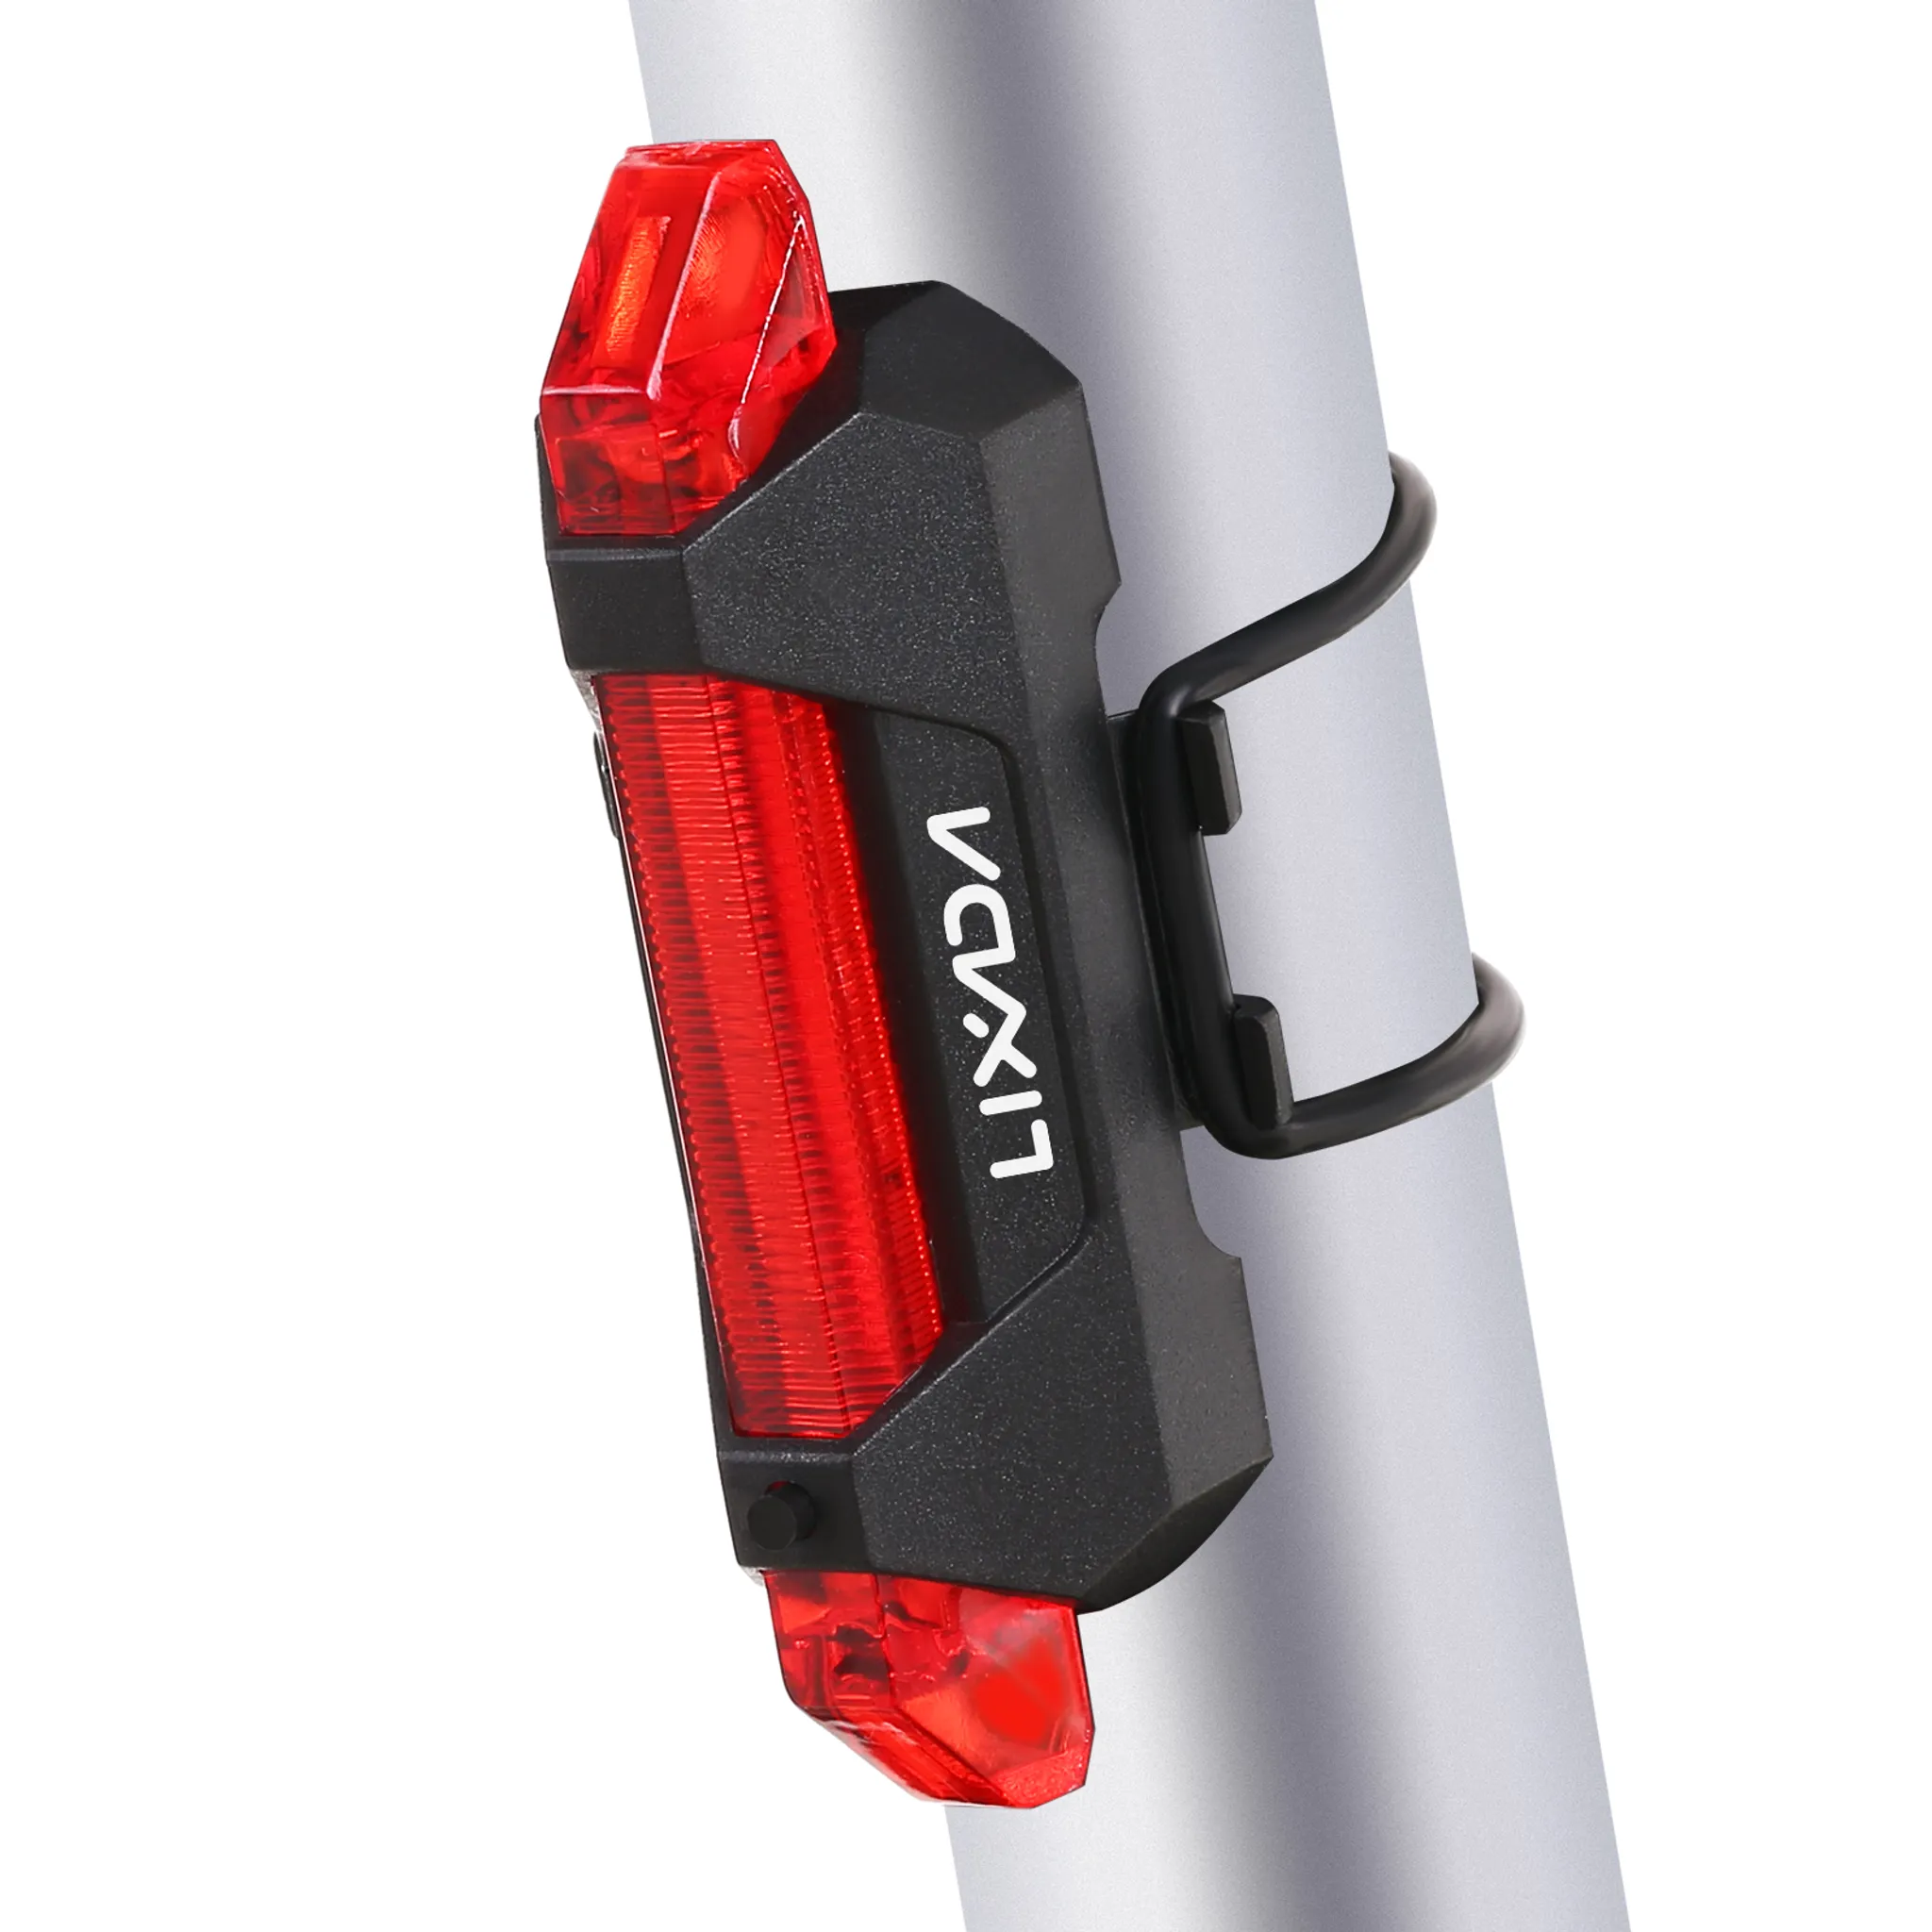 2stk Fahrrad LED Rücklicht Licht Fahrradlampe Hinten Leuchte USB